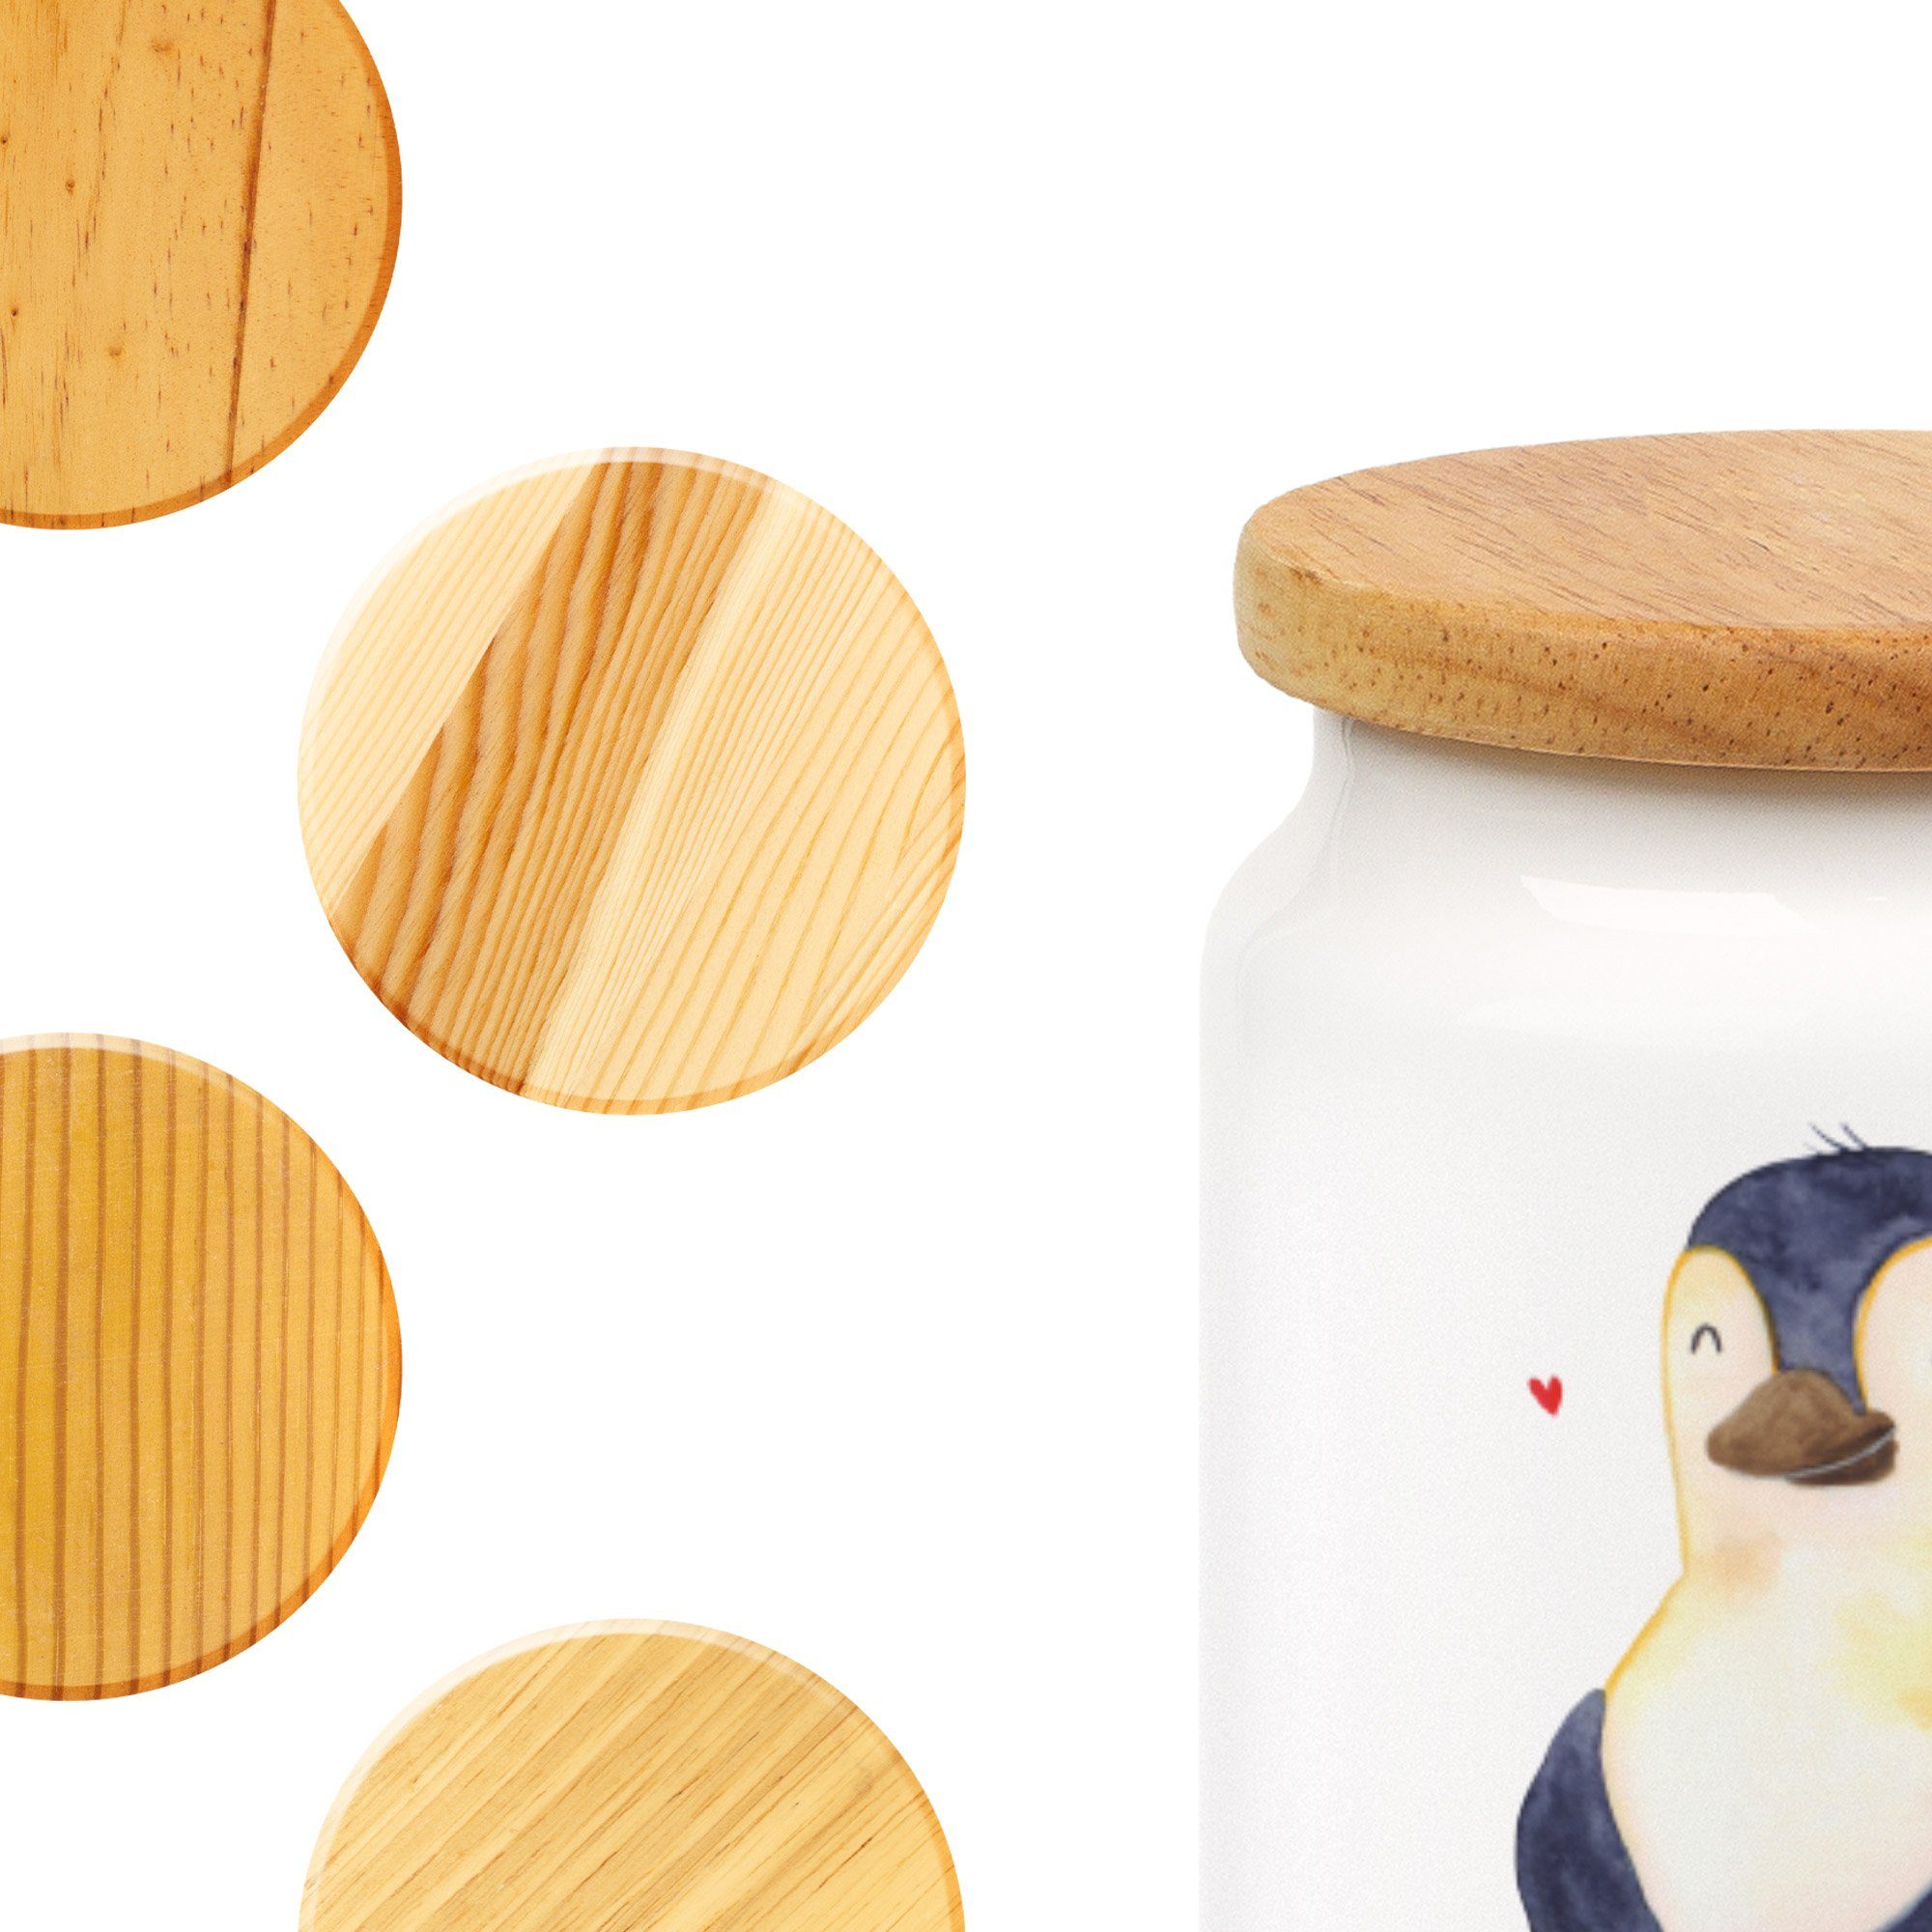 Mr. & Mrs. Panda (1-tlg) Pinguin - Motiva, Abnehmen, Geschenk, foodbaby, - Bierbauch, Weiß Vorratsdose Diät Keramik